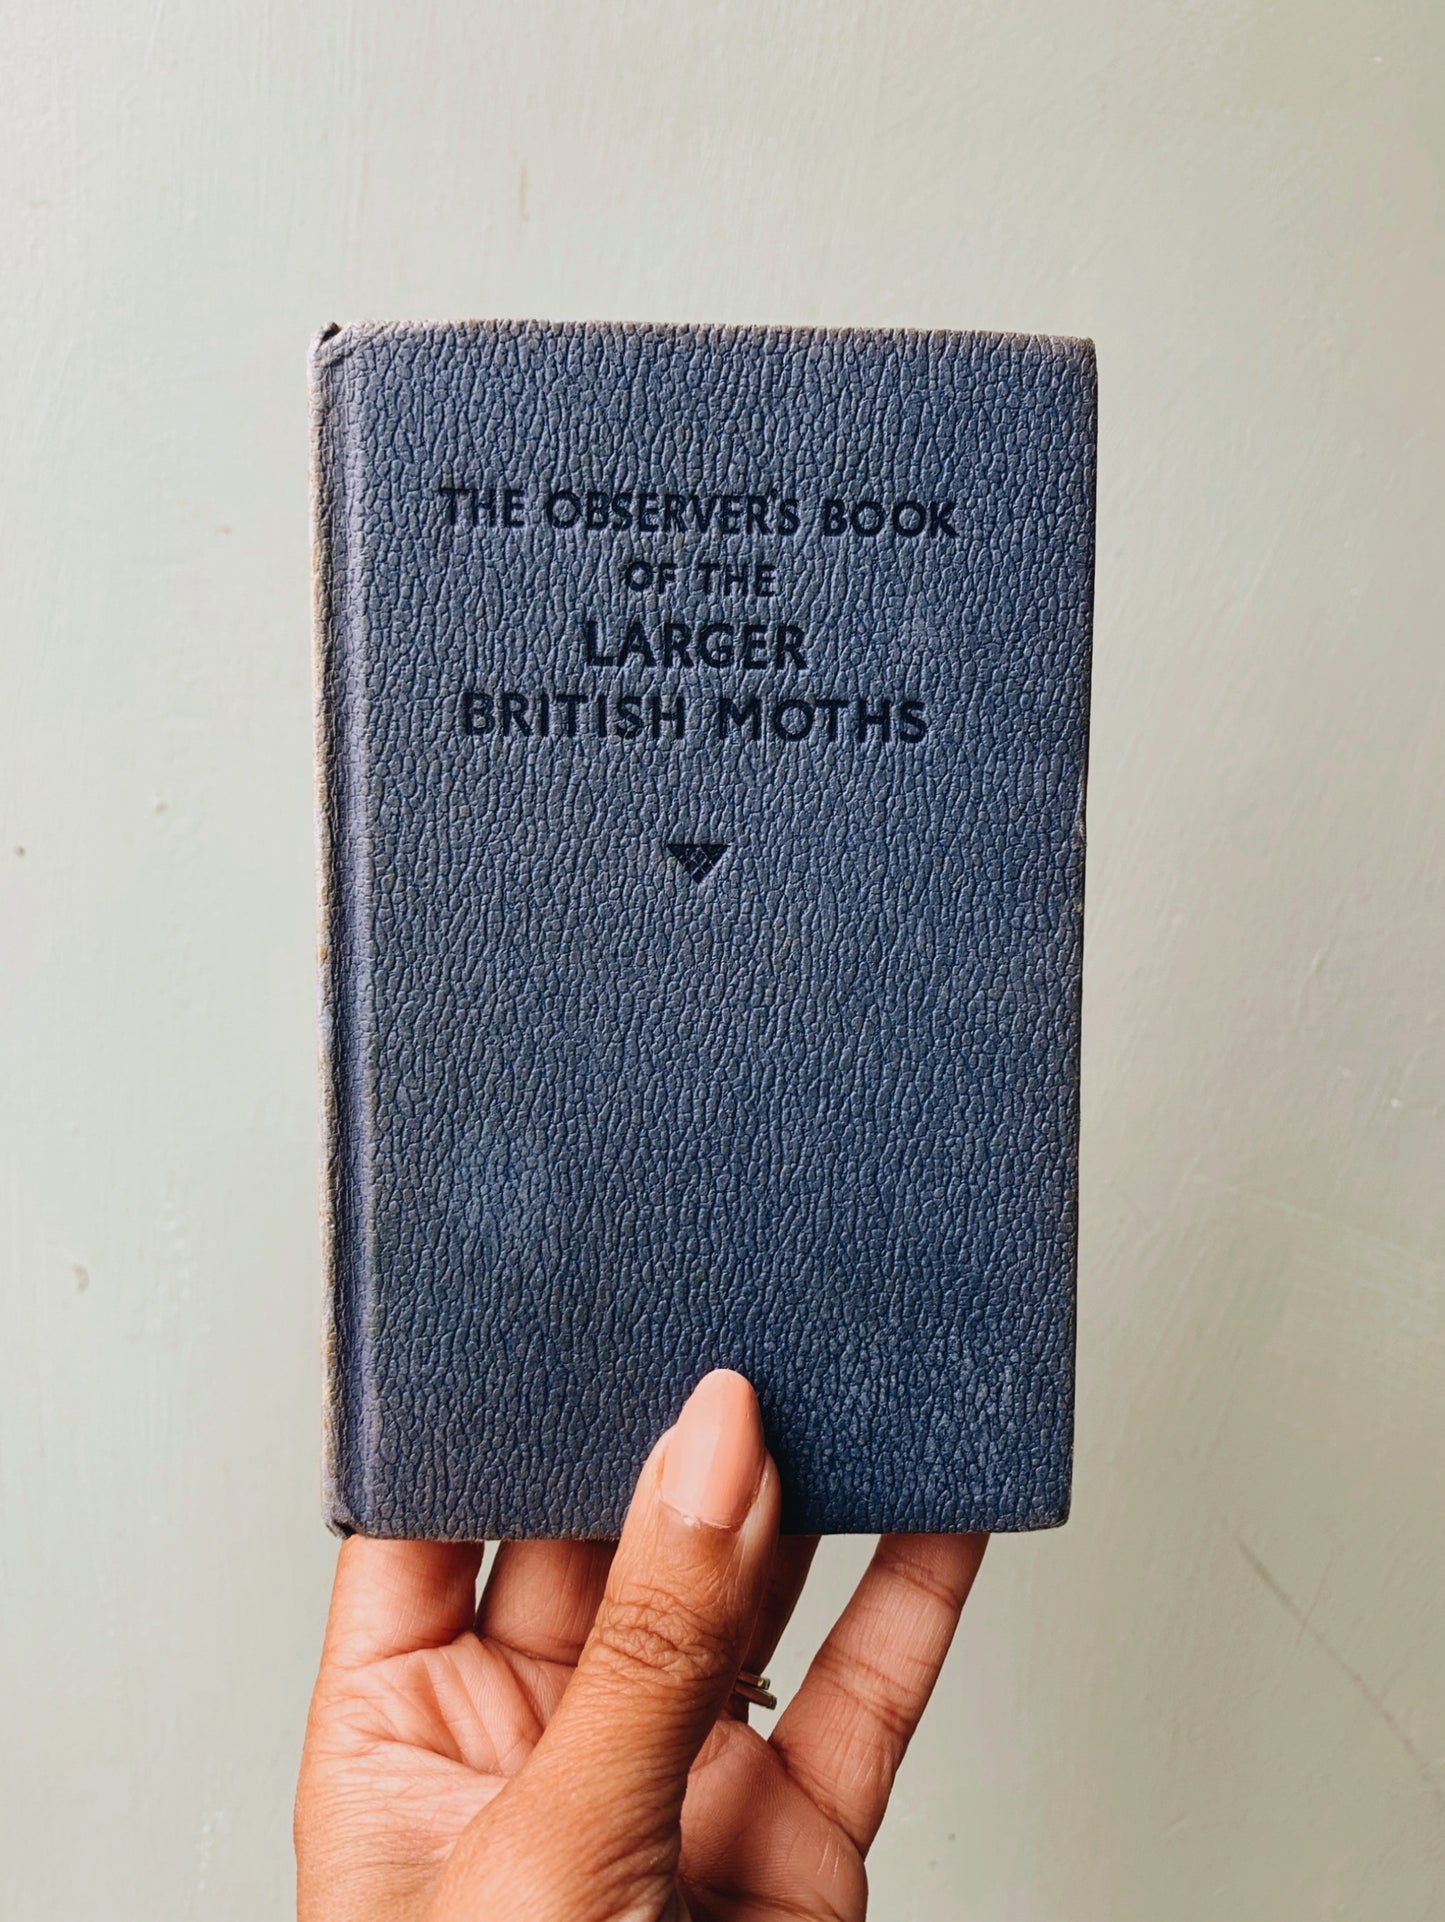 Vintage Large British Moths Observer